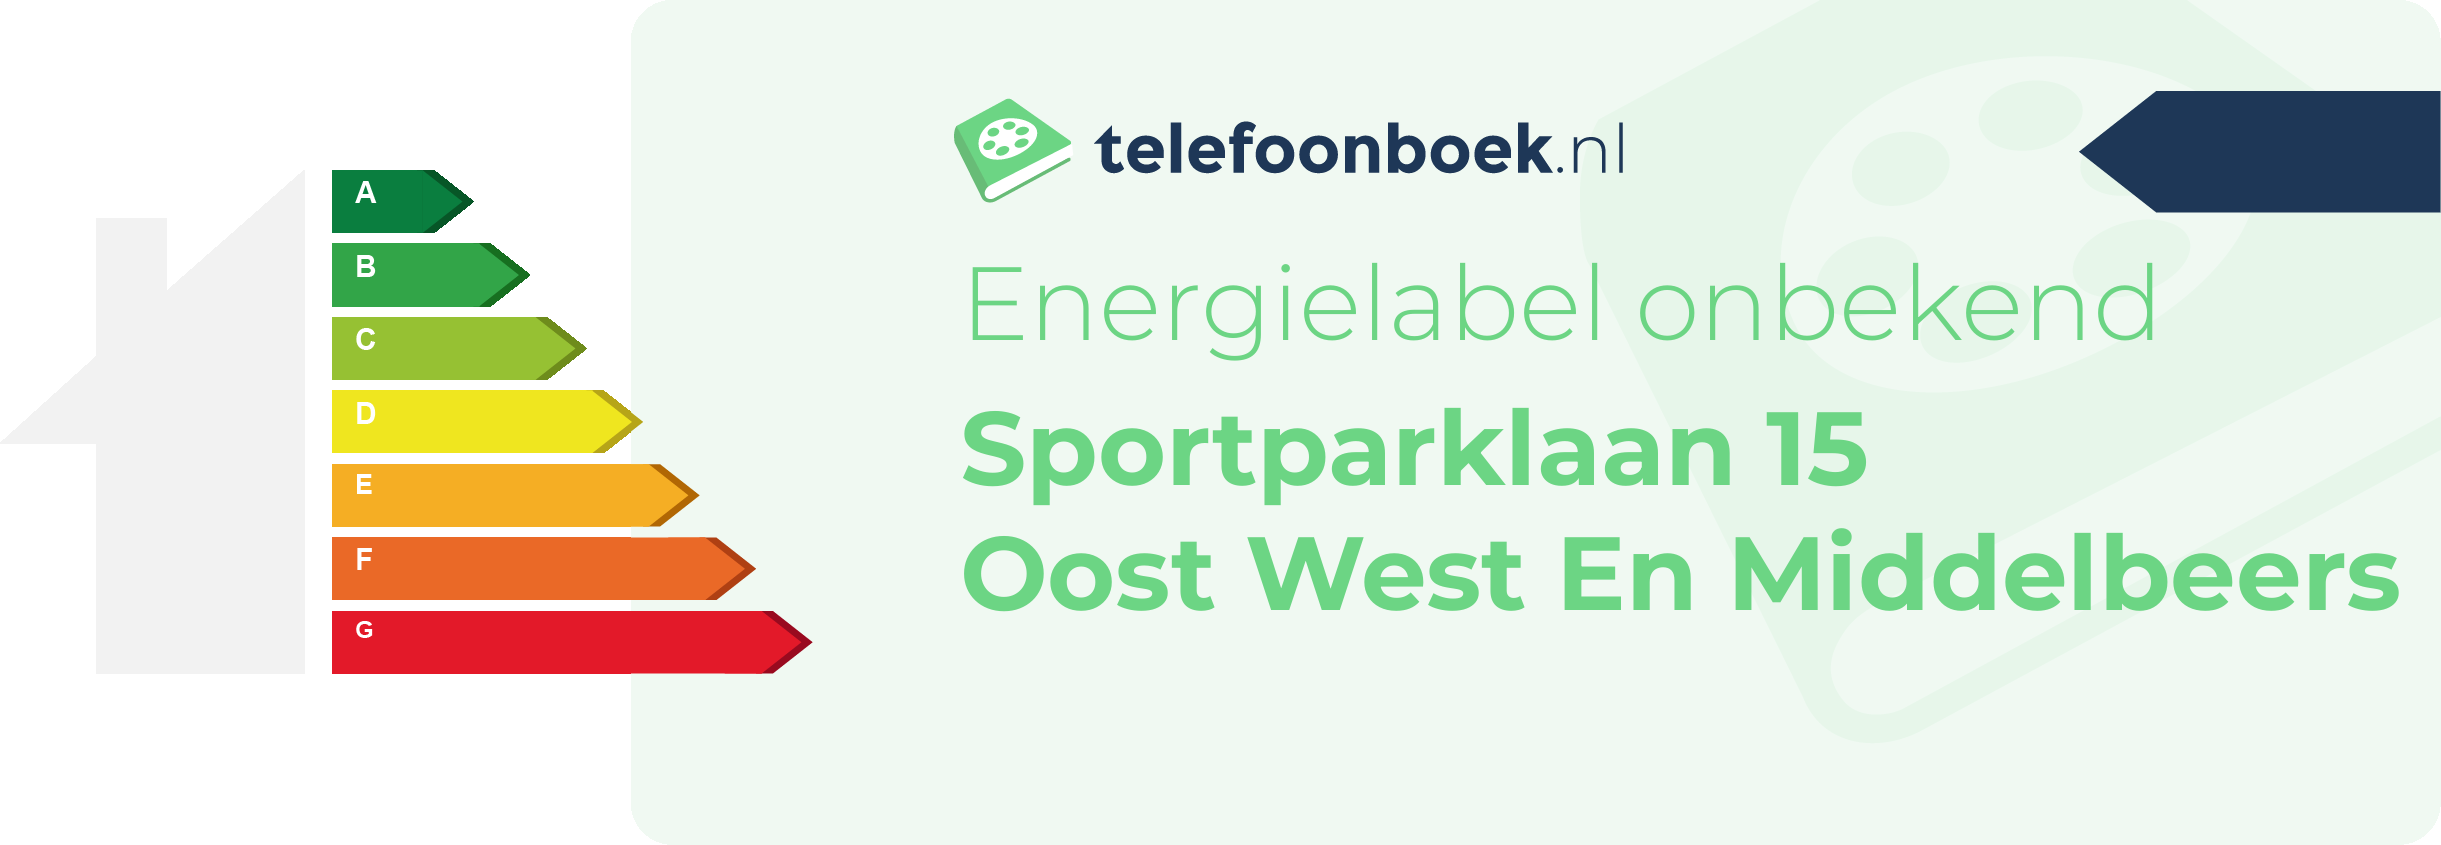 Energielabel Sportparklaan 15 Oost West En Middelbeers